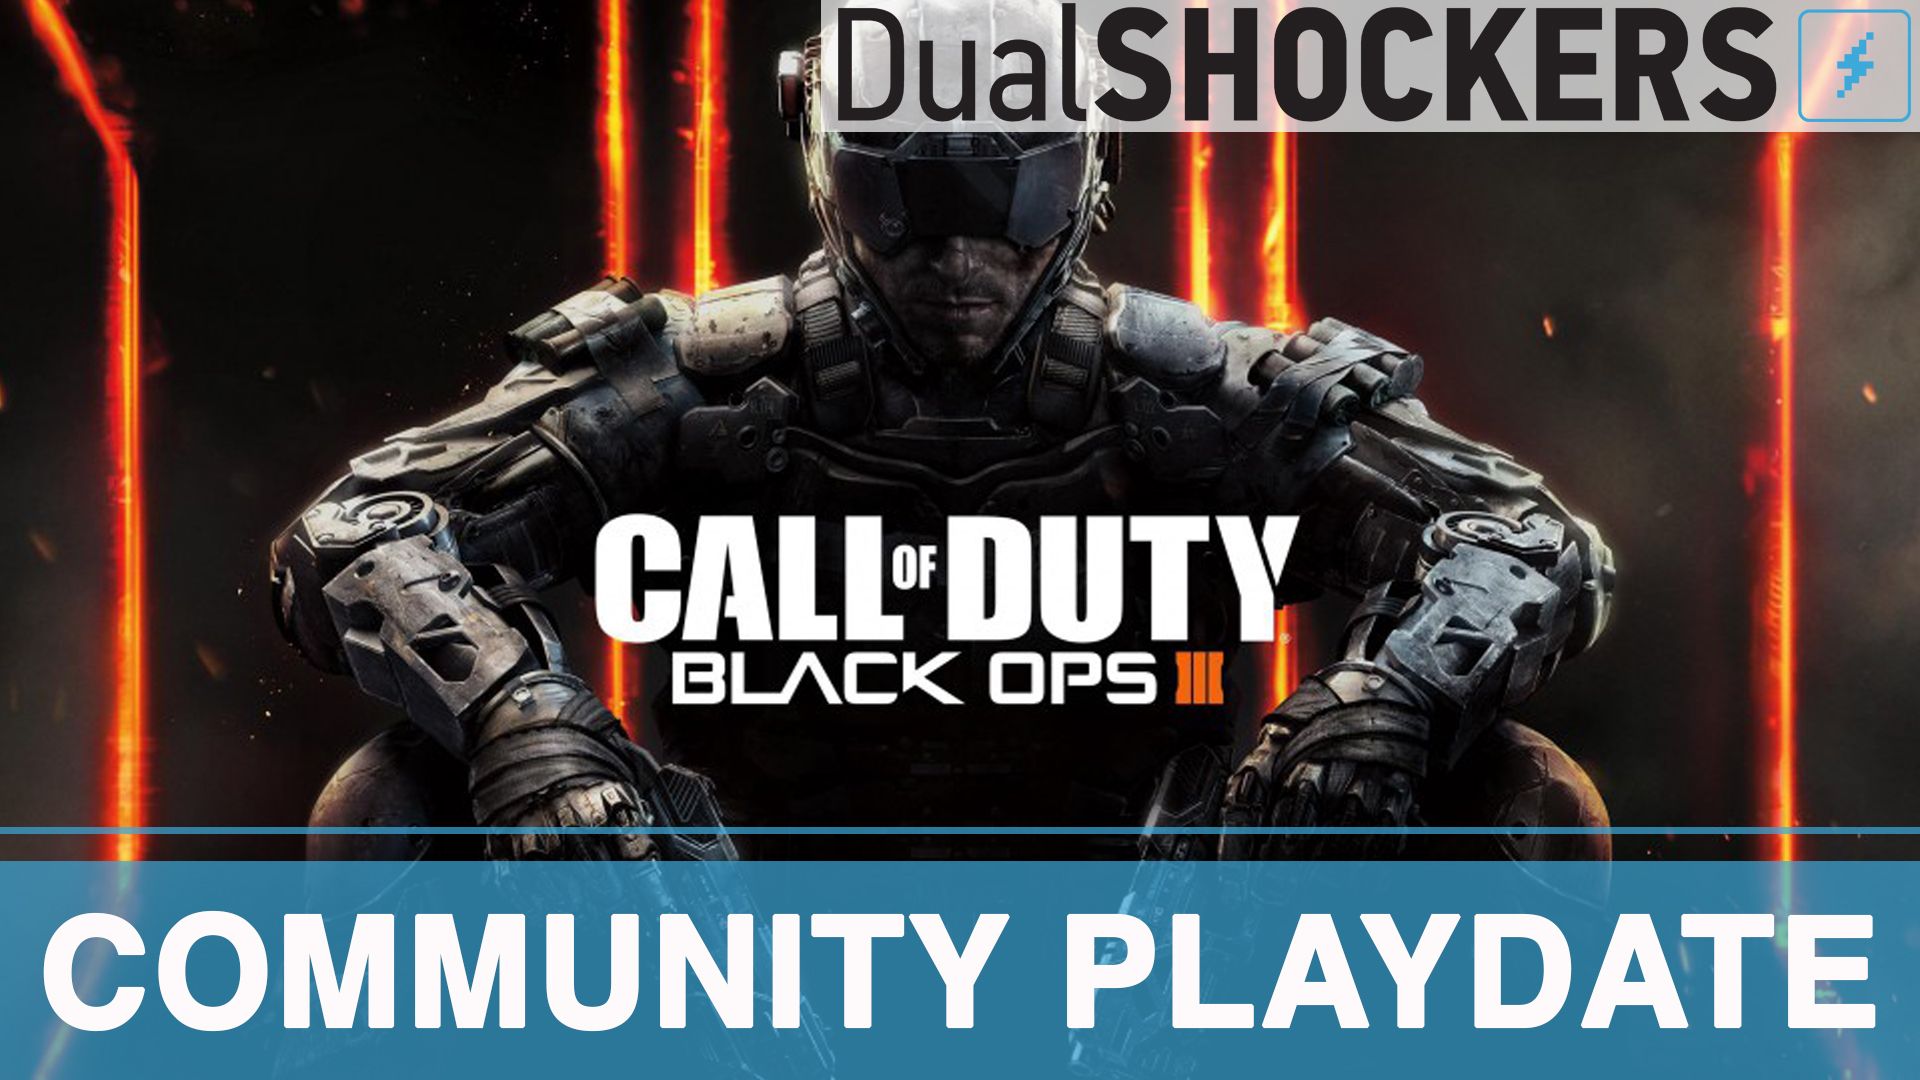 DualShockers' Community Playdate: Call of Duty: Black Ops III